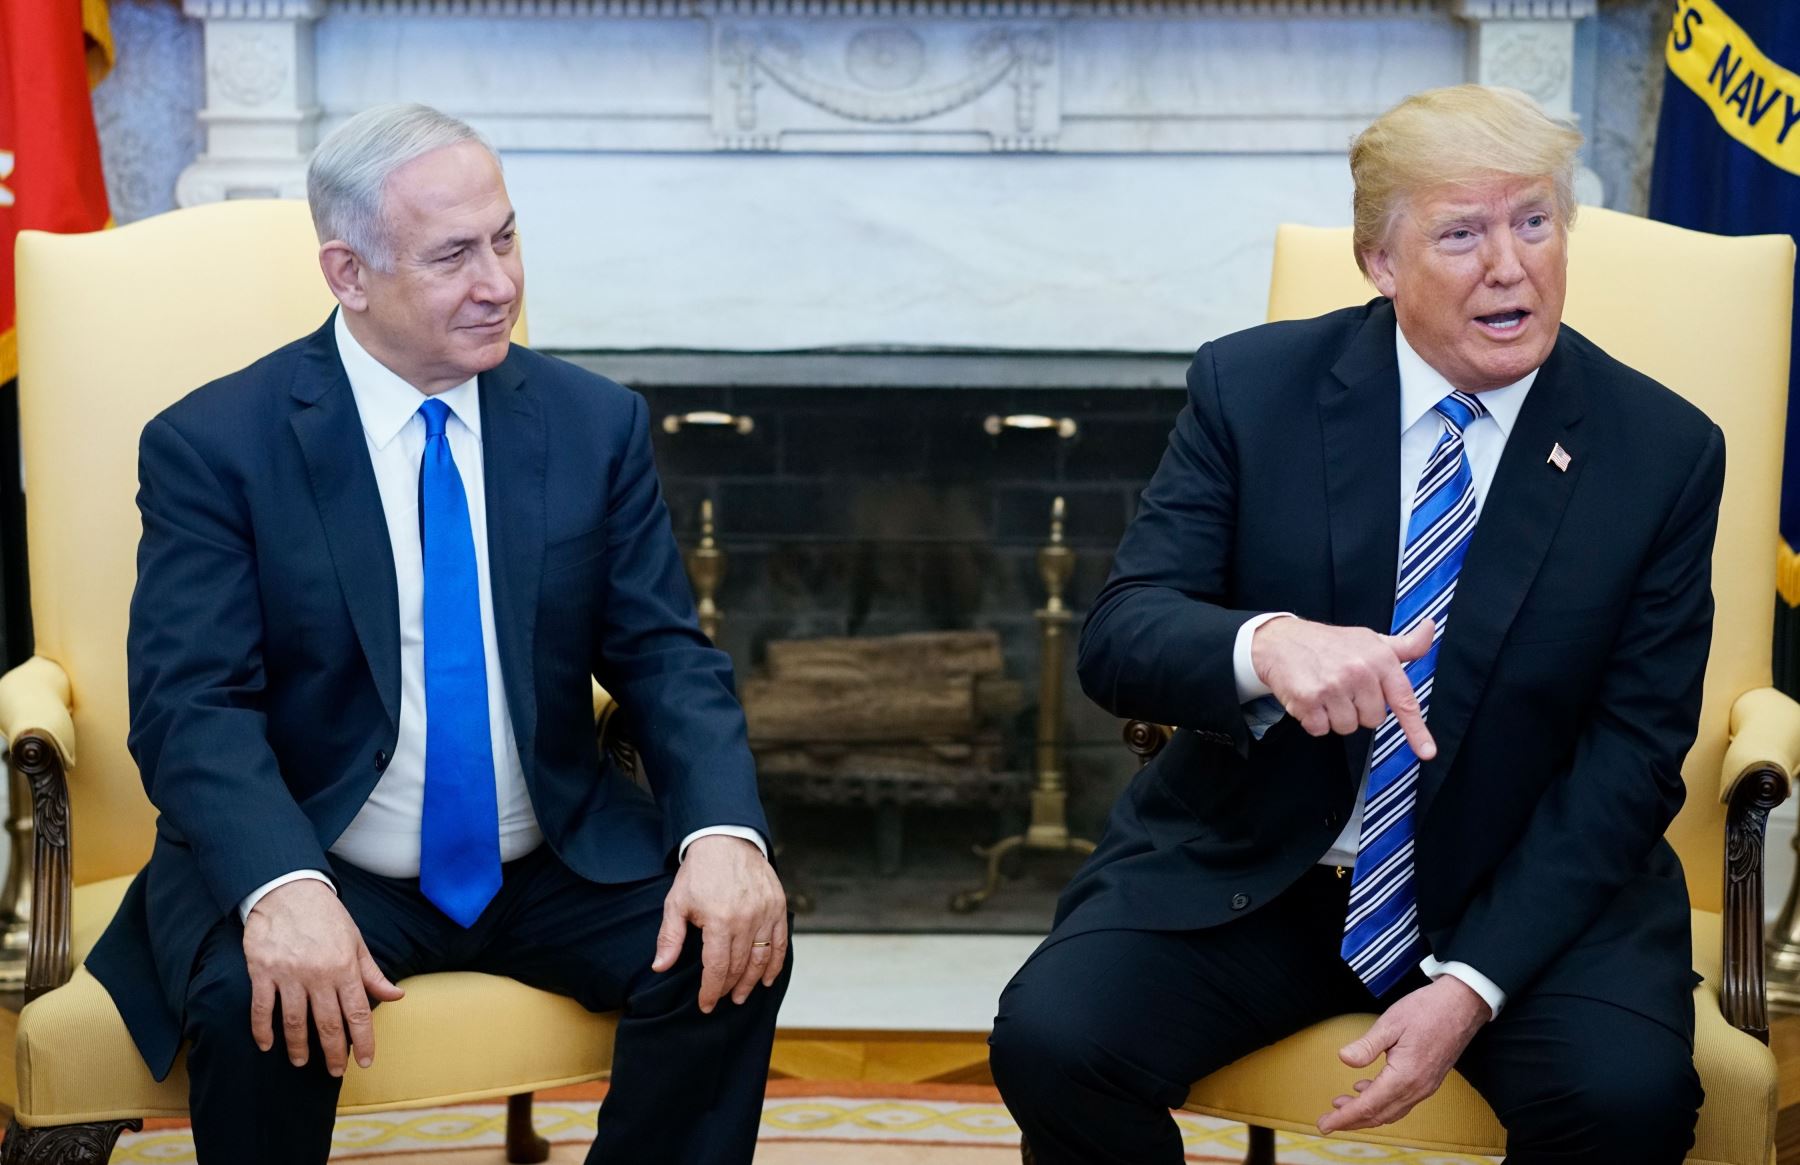 Reunión de Trump con Netanyahu. Foto: AFP